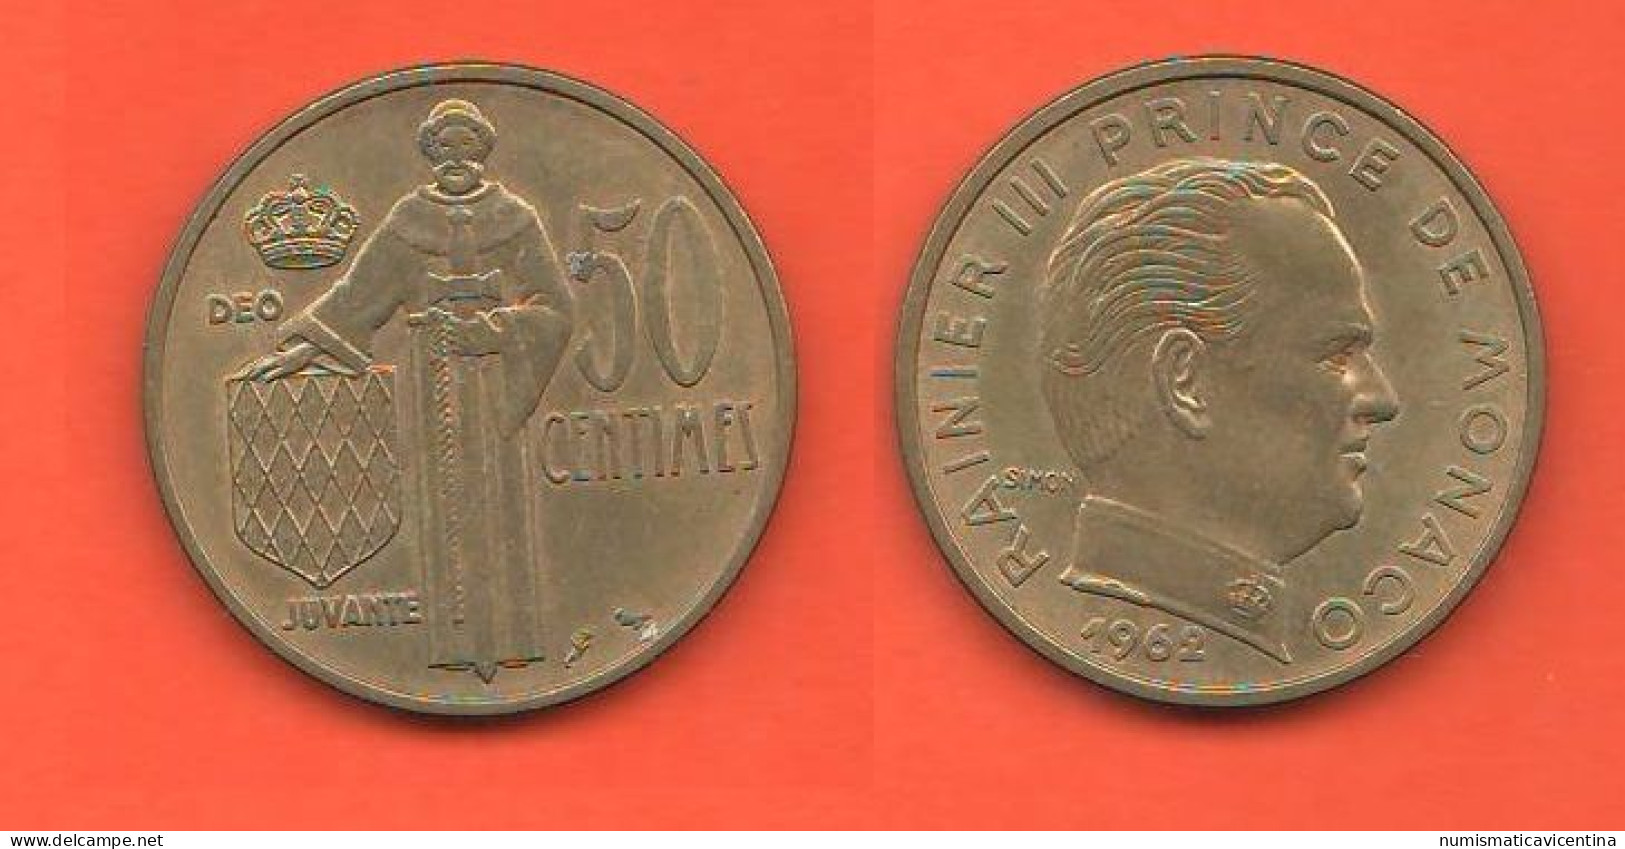 Monaco Principate 50 Centimes 1962 Bronze Typological Coin   C 8 - 1960-2001 Franchi Nuovi